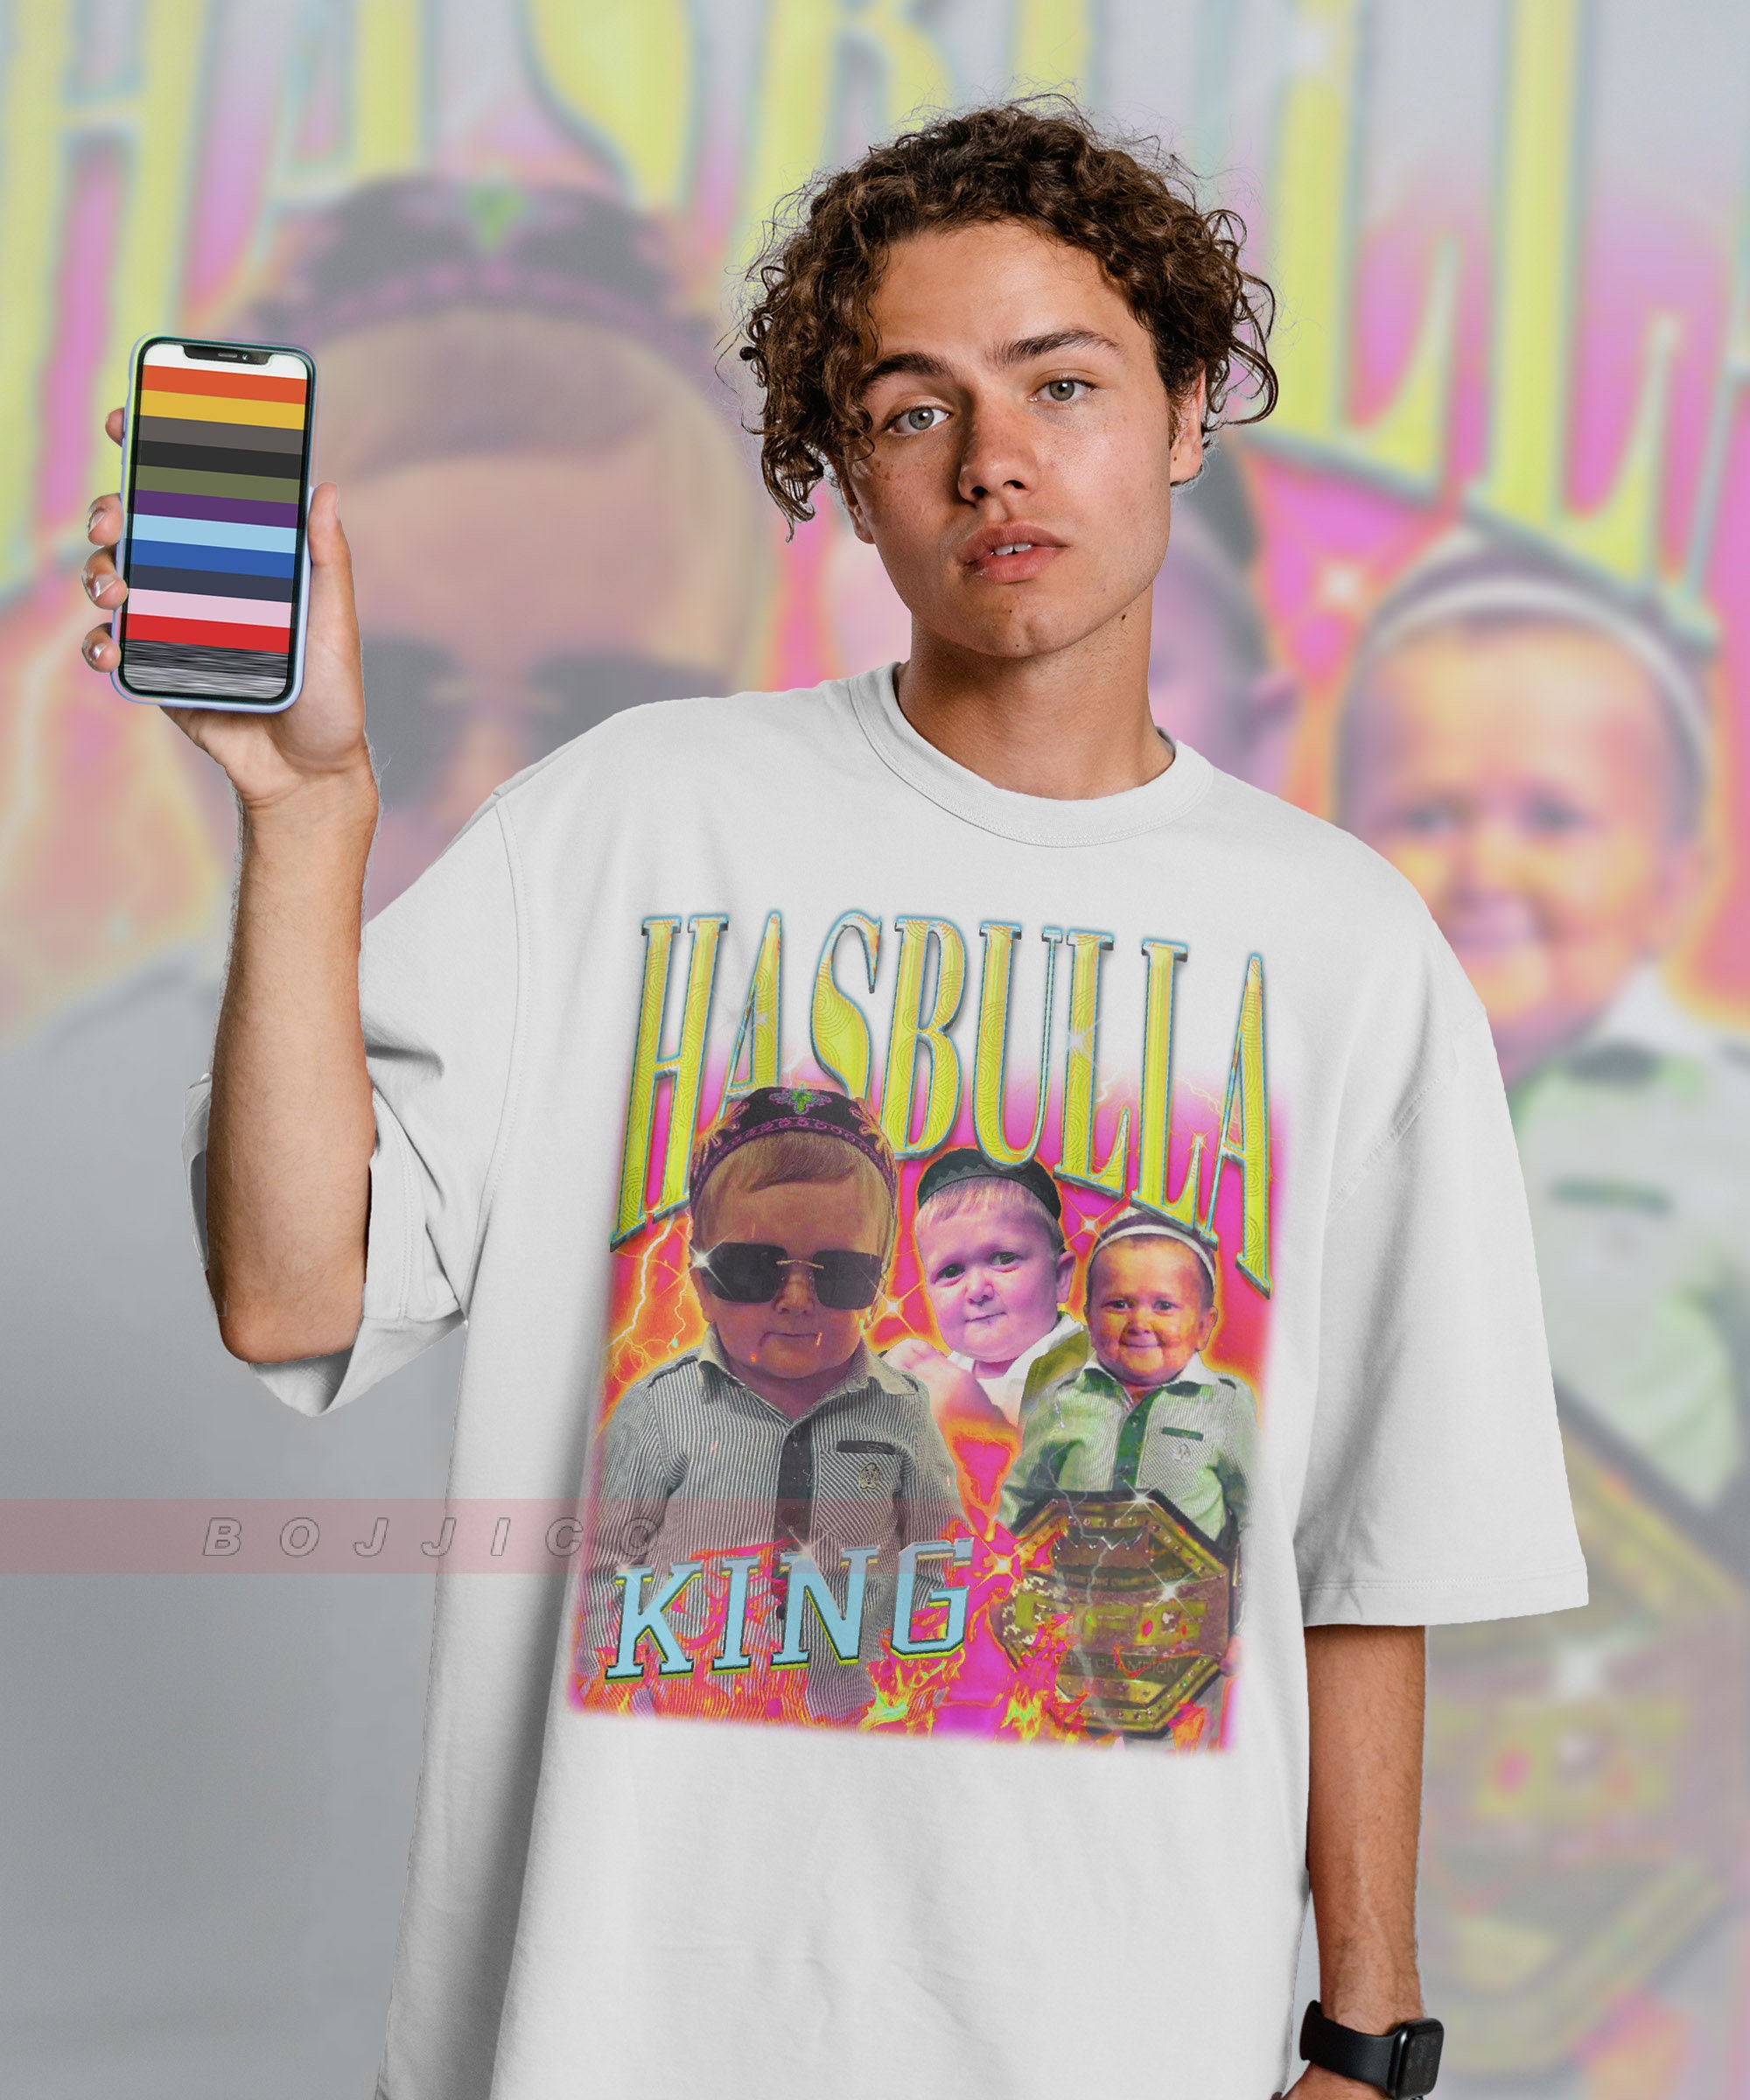 KING HASBULLA Shirt, Mini Khabib Hasbulla Homage Shirt, Hasbulla Shirt,  King Hasbulla Funny Shirt, Abdu Rozik Vs Shirt, King Hasbulla Meme 